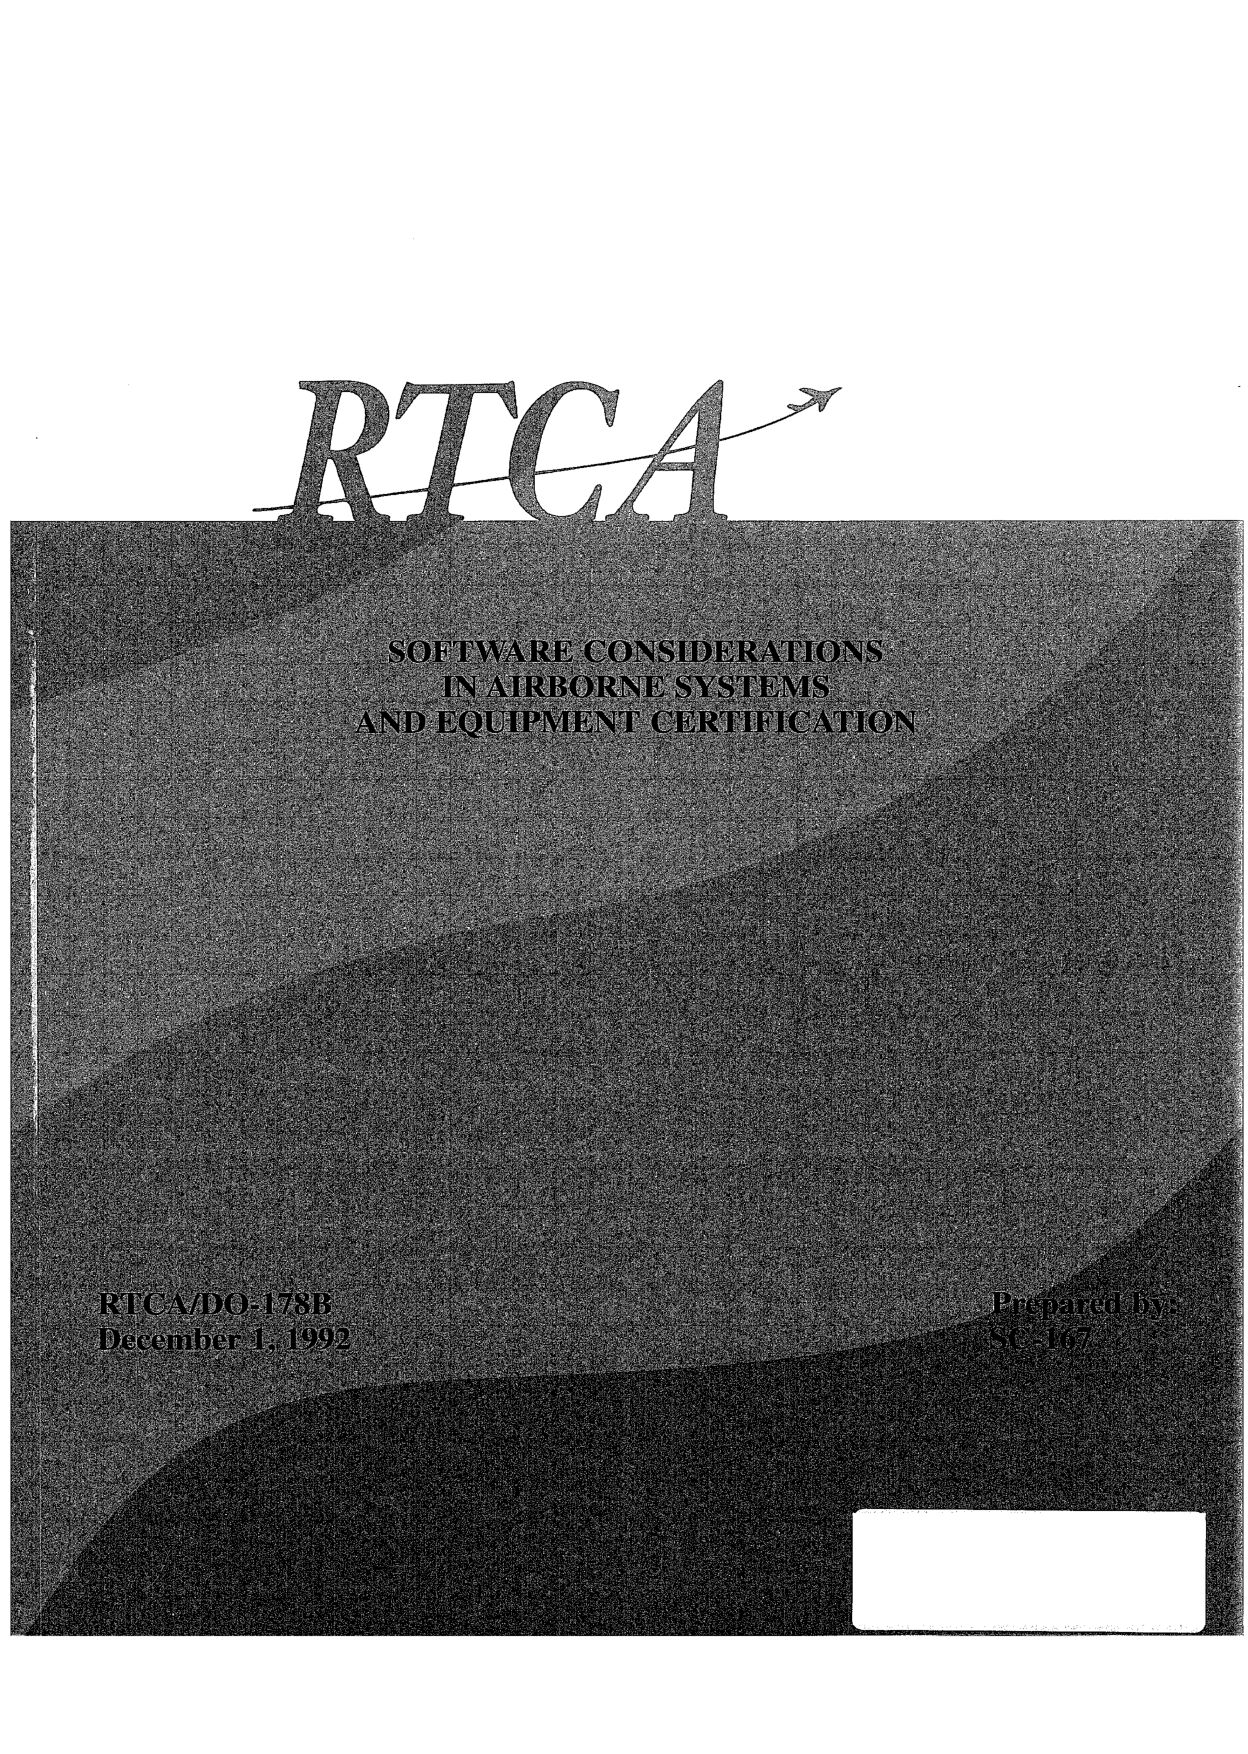 RTCA DO-178B-1992封面图